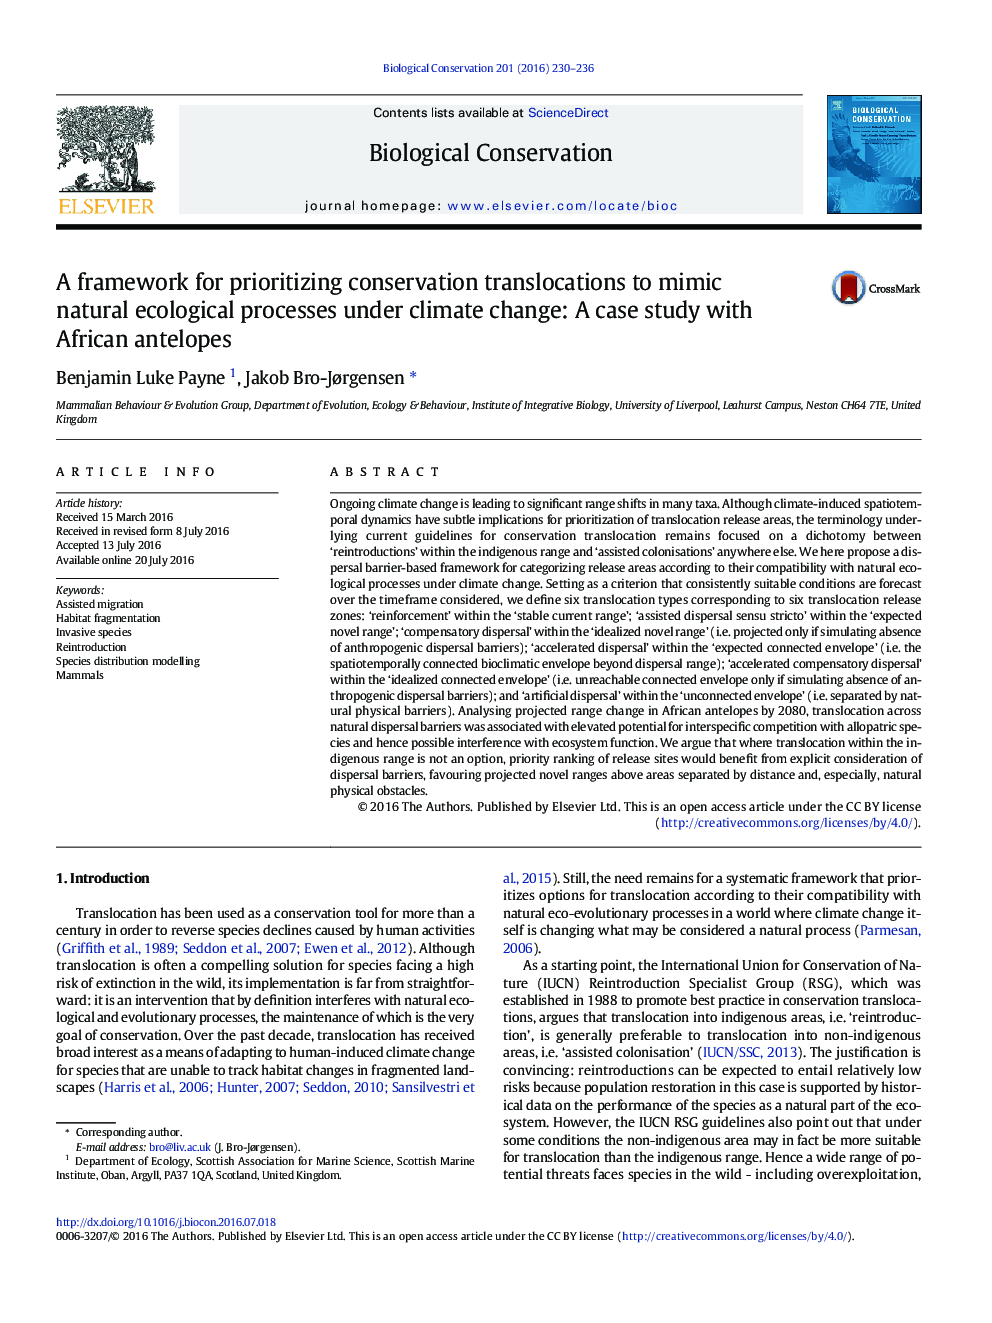 یک چارچوب برای اولویت بندی تغییرات حفاظت شده برای تقلید از فرآیندهای طبیعی زیست محیطی تحت تغییرات آب و هوایی: یک مطالعه مورد با آنتیلئوپ های آفریقایی 